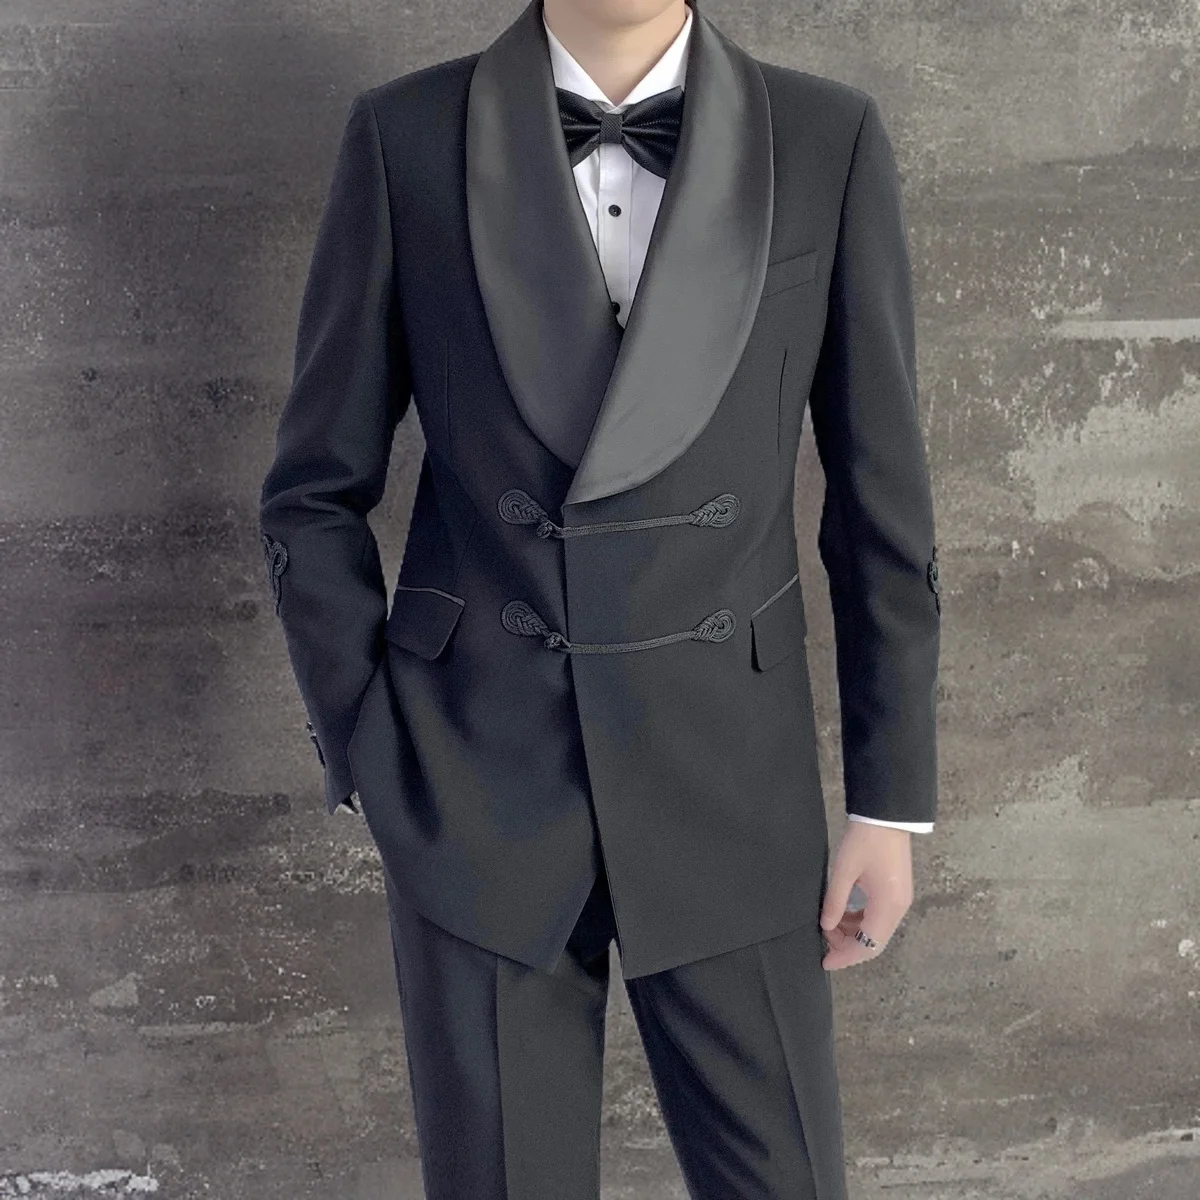 Specialiai pasiūtas juodas dvigubas jaunikis vyriškas kostiumas su skara atlapu ir kiniškomis sagomis oficialioms vestuvėms (švarkas + kelnės) Nuotrauka 0